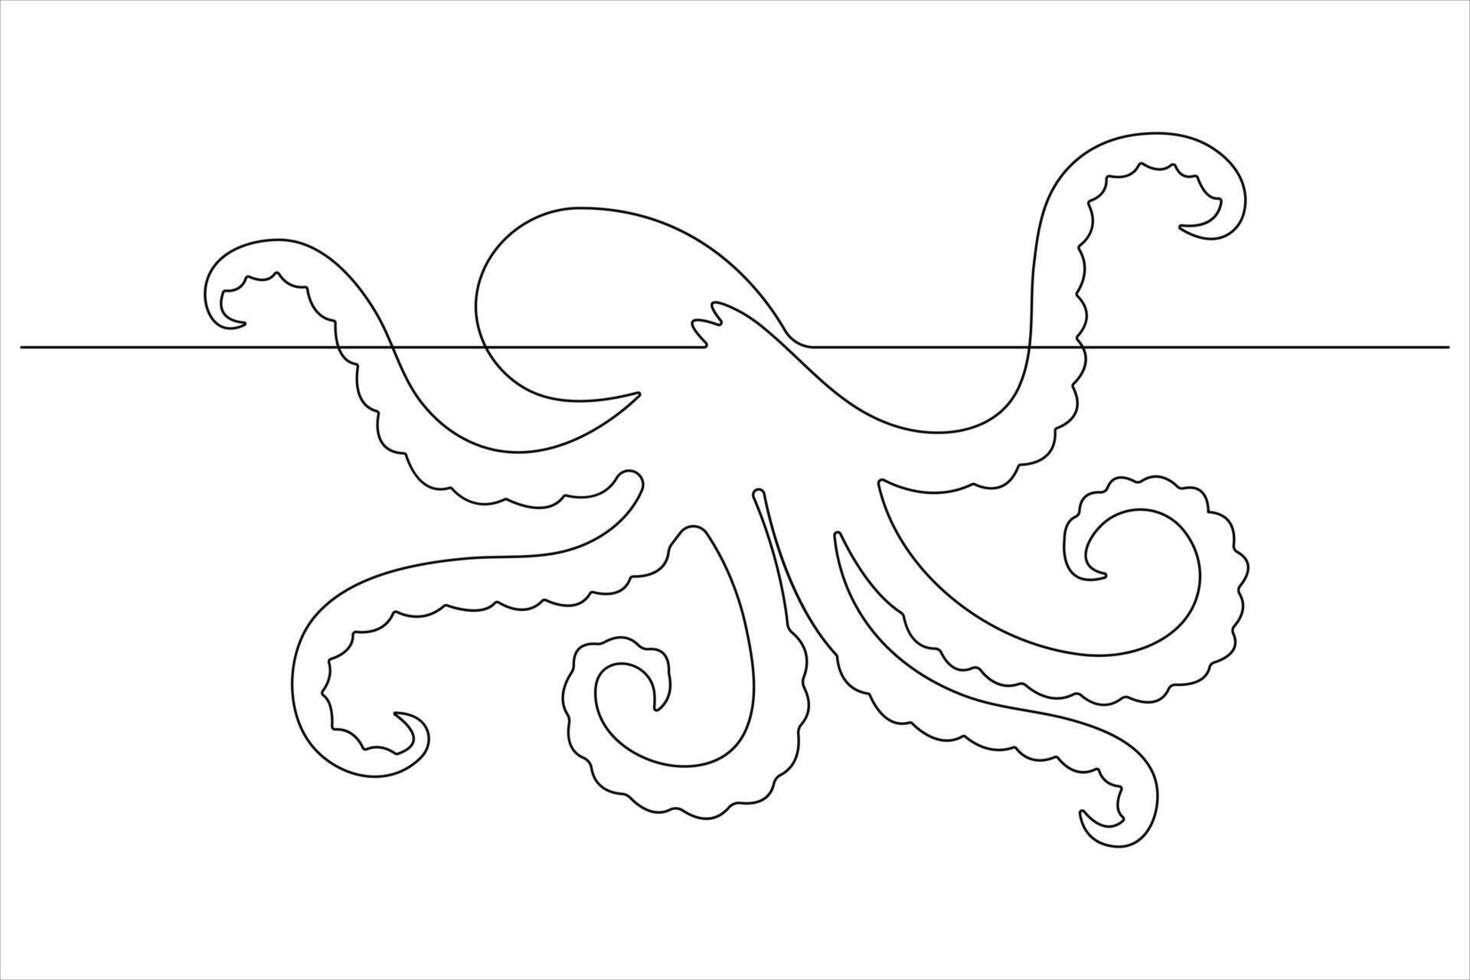 Octopus zee dier doorlopend een lijn kunst tekening van schets vector illustratie